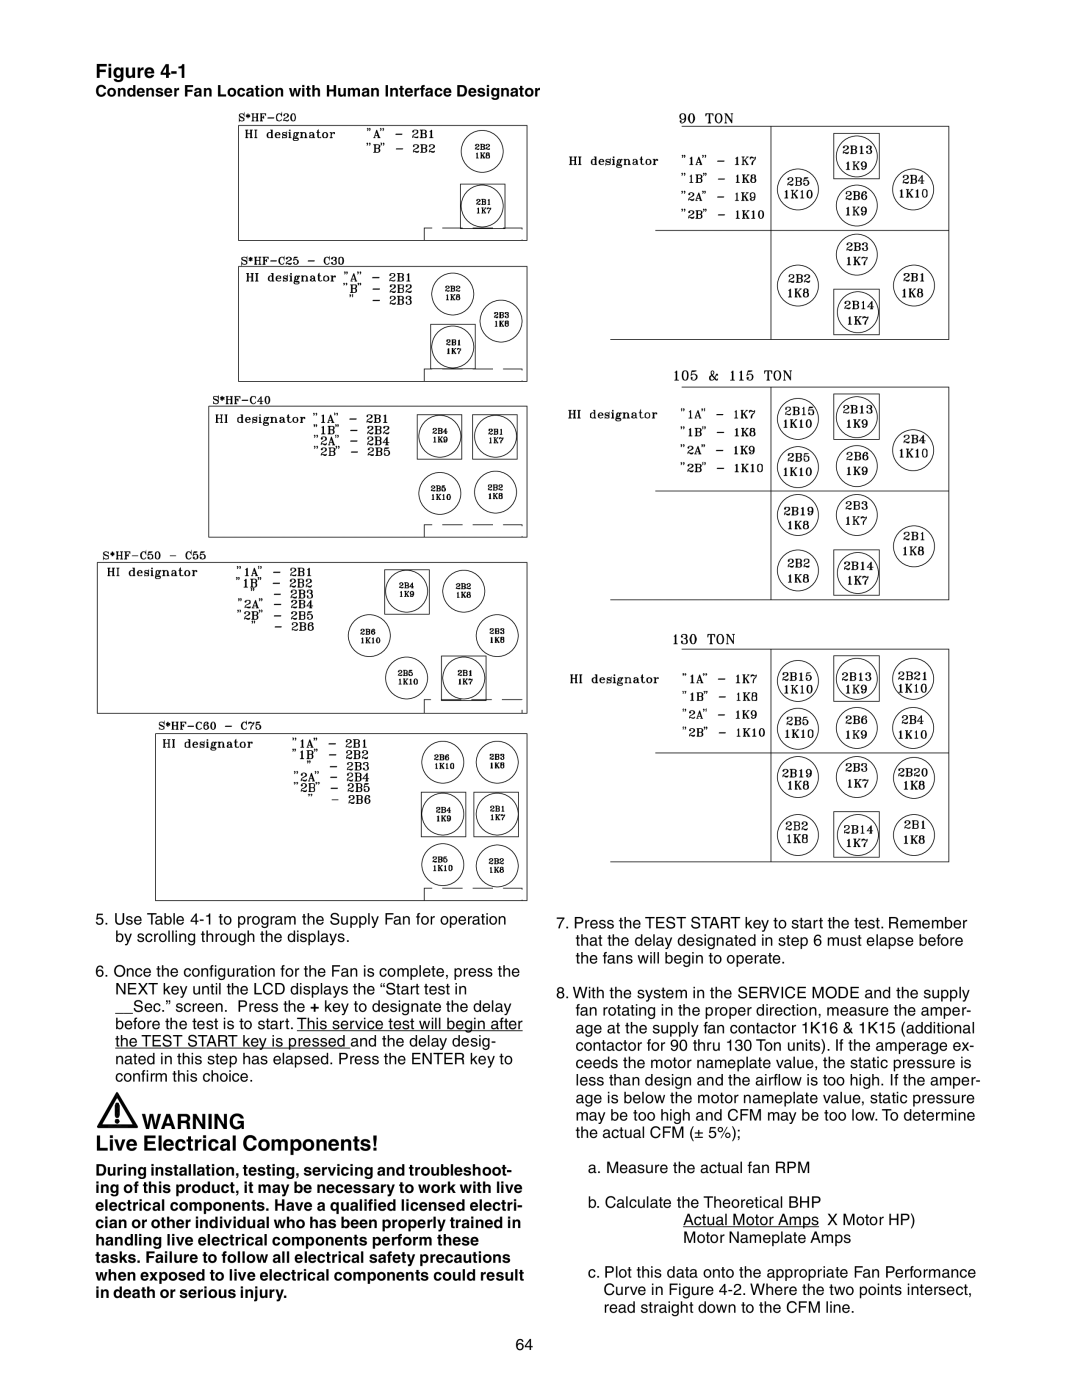 Trane RT-SVX10C-EN specifications Live Electrical Components, Figure, a.Measure the actual fan RPM 